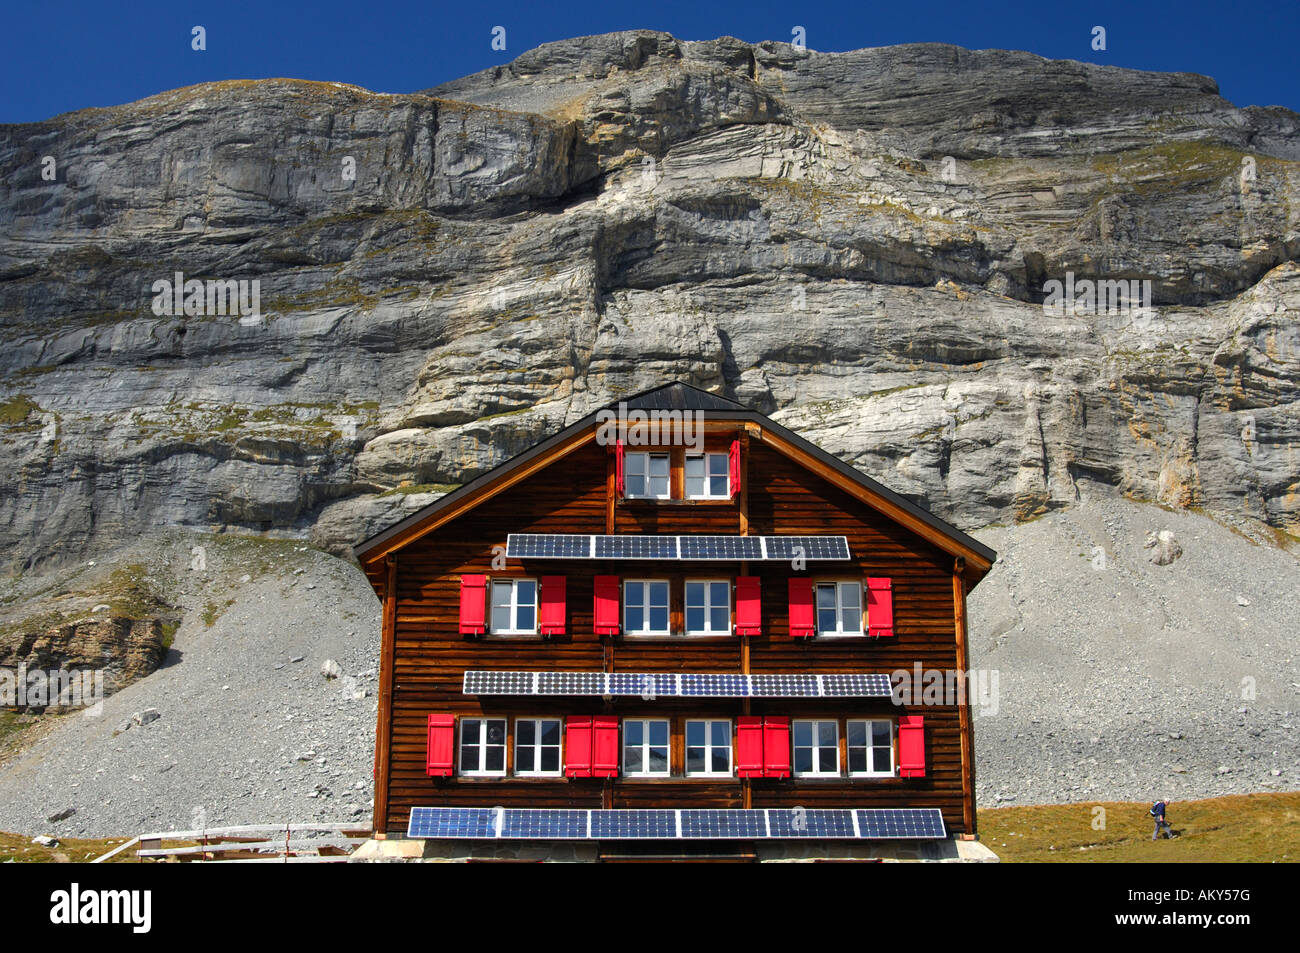 Utilisation de l'énergie solaire dans les régions éloignées, Laemmerenhuette, Club alpin suisse, Suisse Banque D'Images